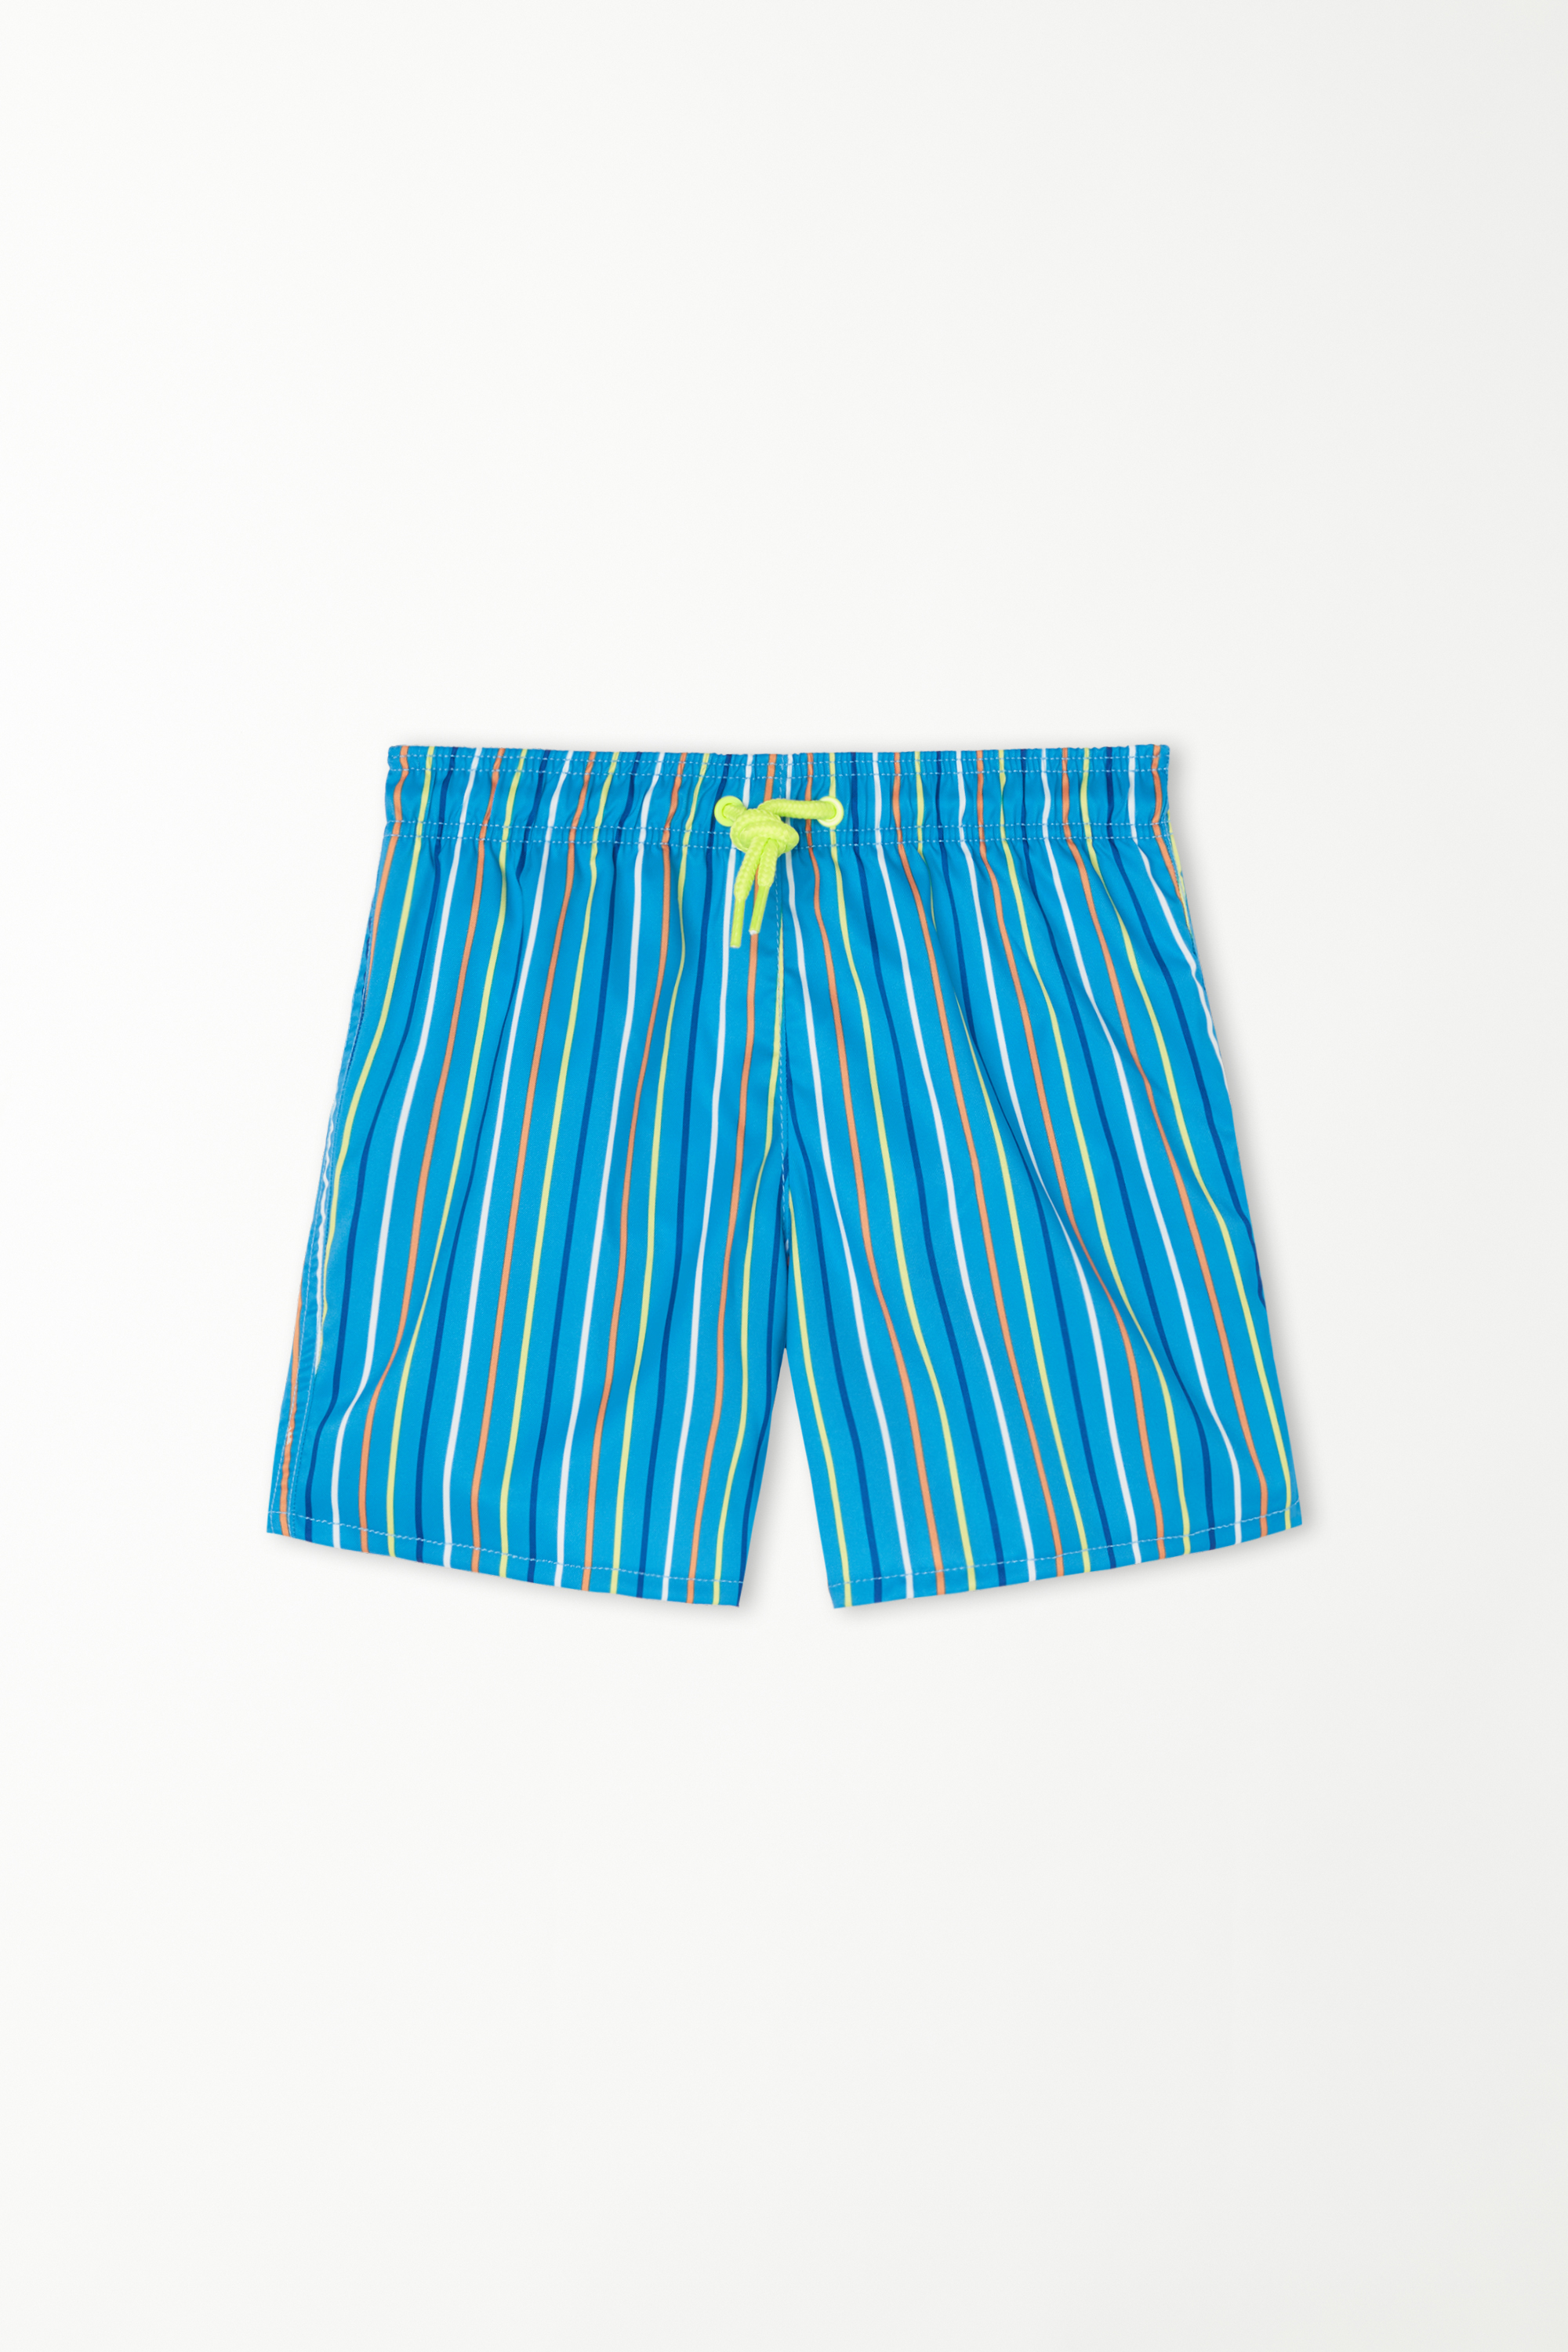 Boys’ Printed Canvas Swimming Shorts